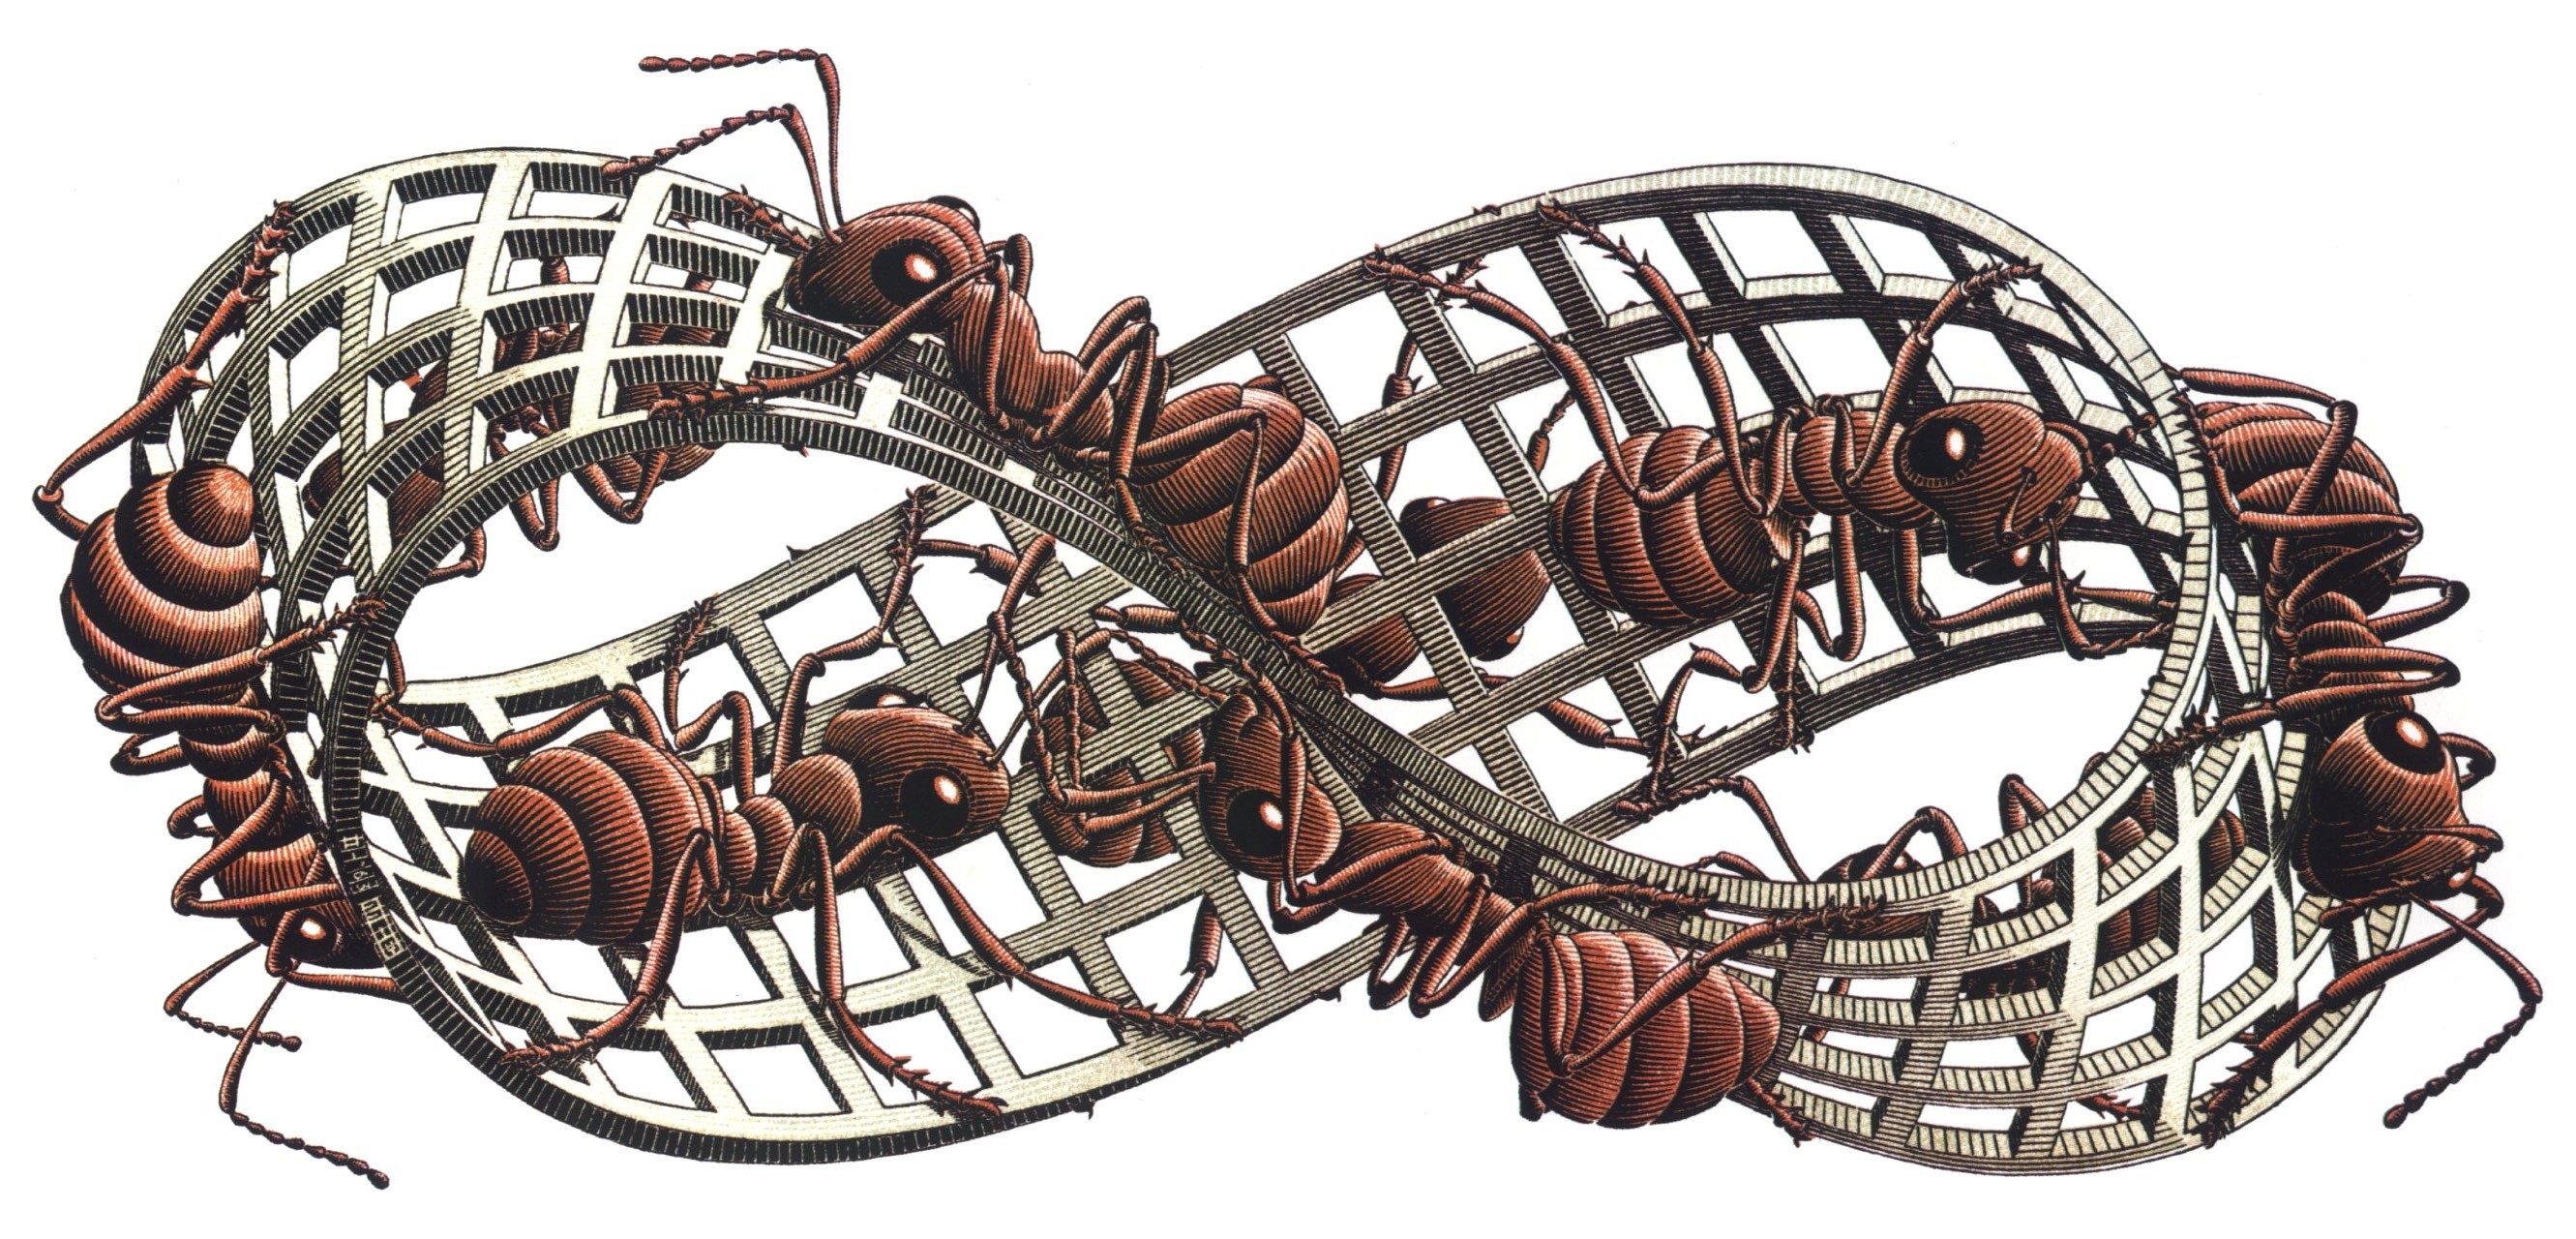 The Moibus Strip Escher